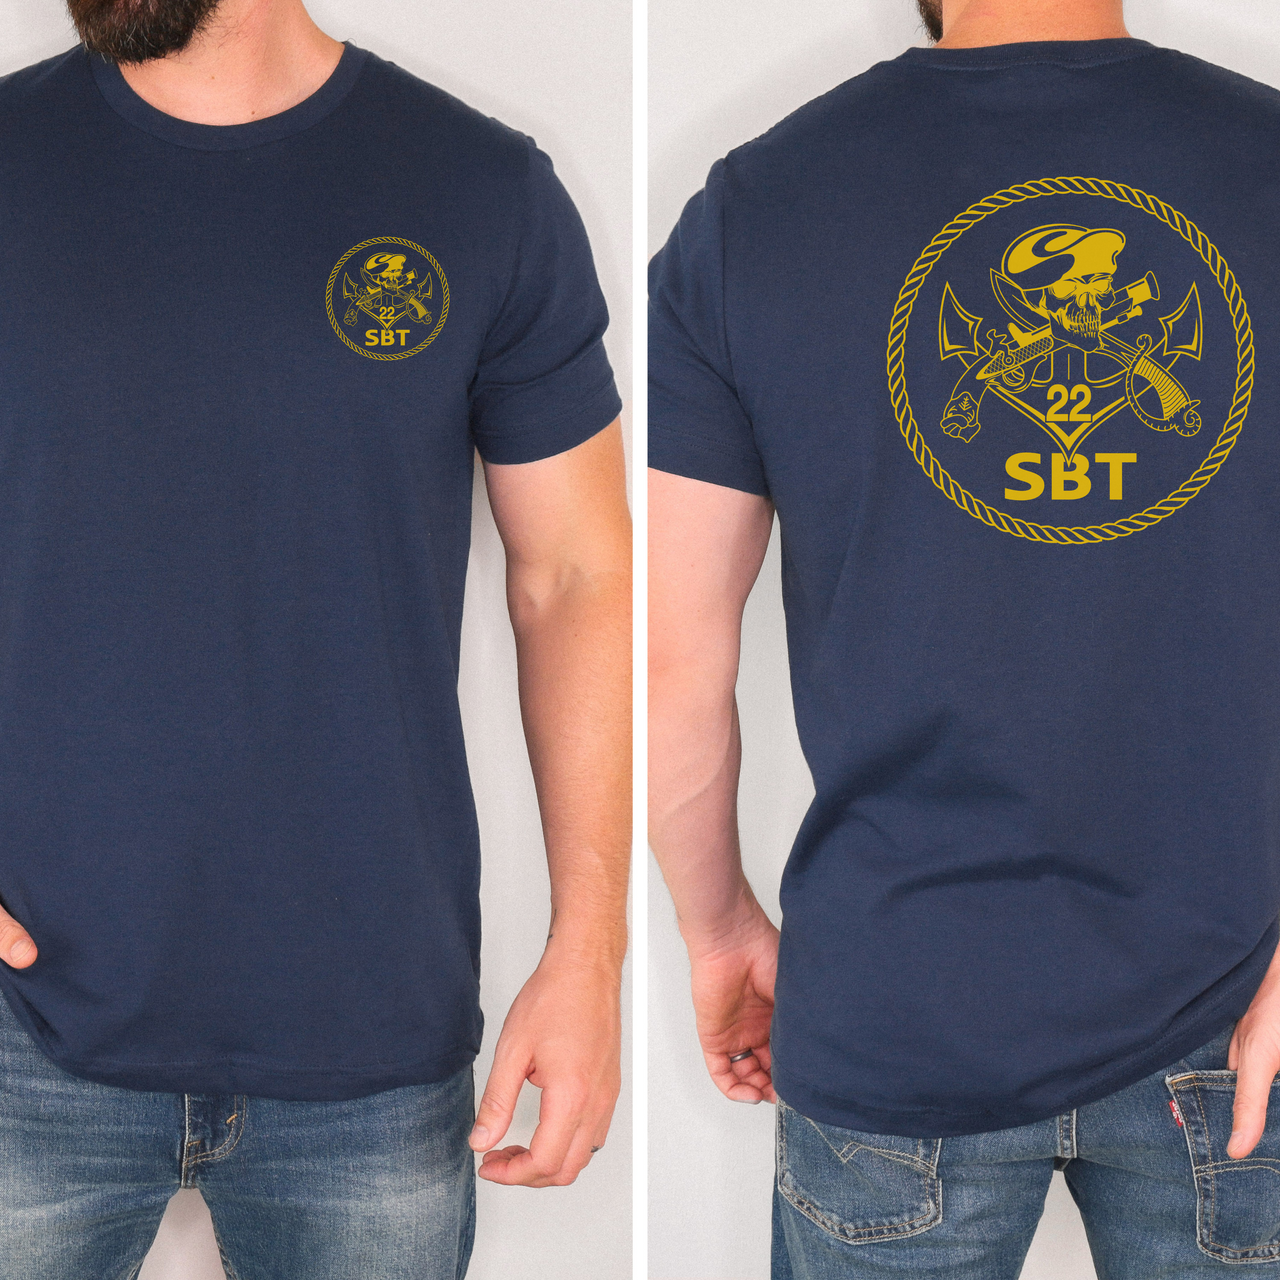 Special Boat Team 22 v2 - SBT22 T-Shirt (Gold)